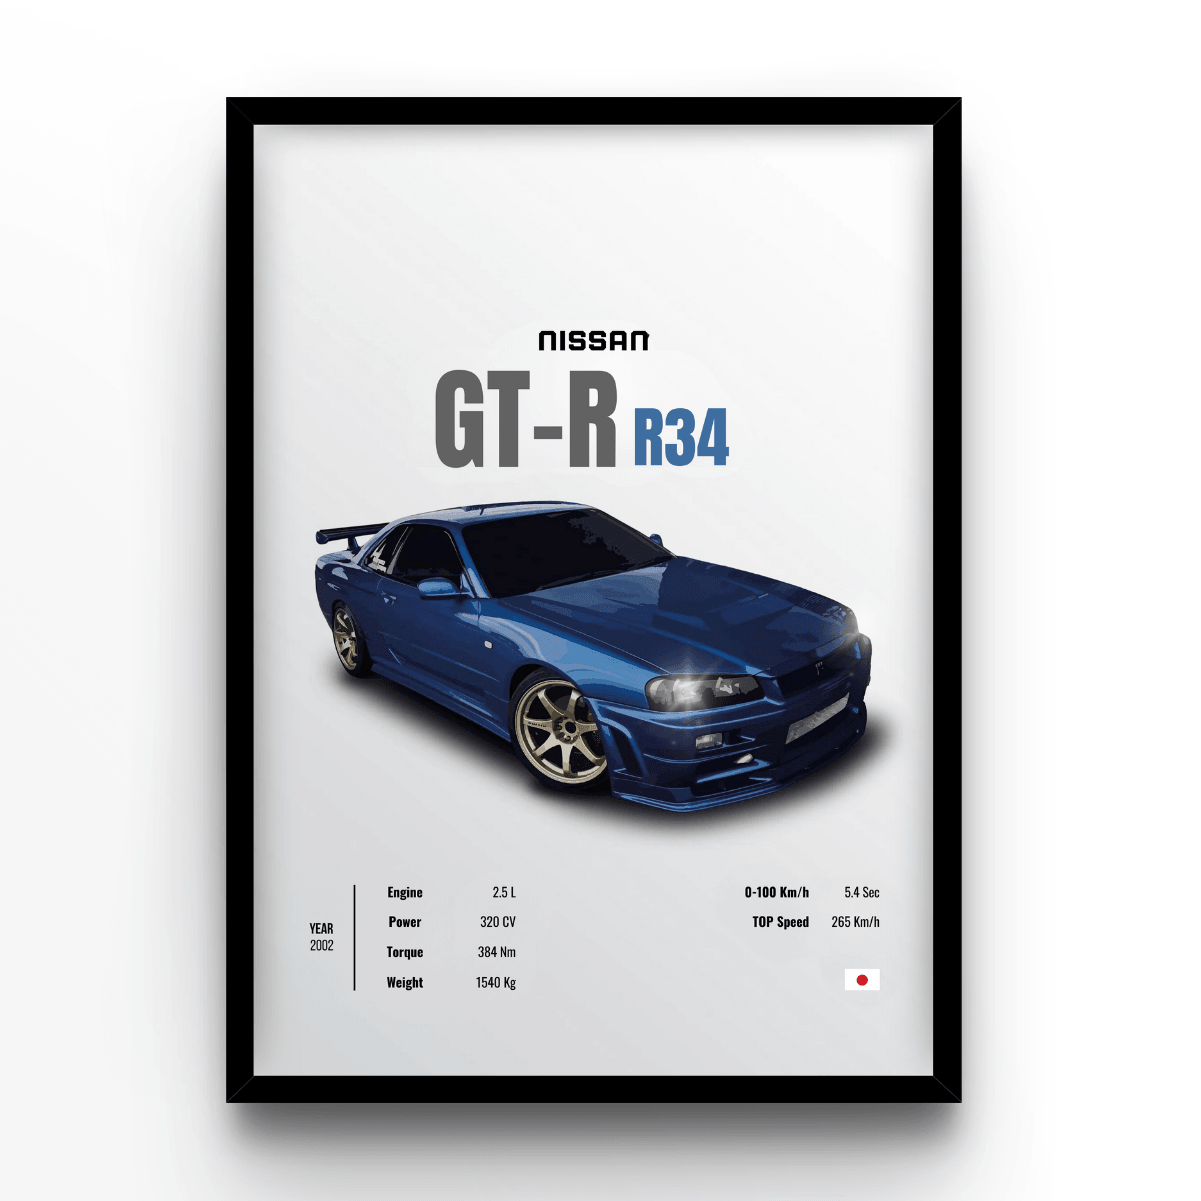 Nissan GT-R R34 - A4, A3, A2 Posters Base - Poster Print Shop / Art Prints / PostersBase